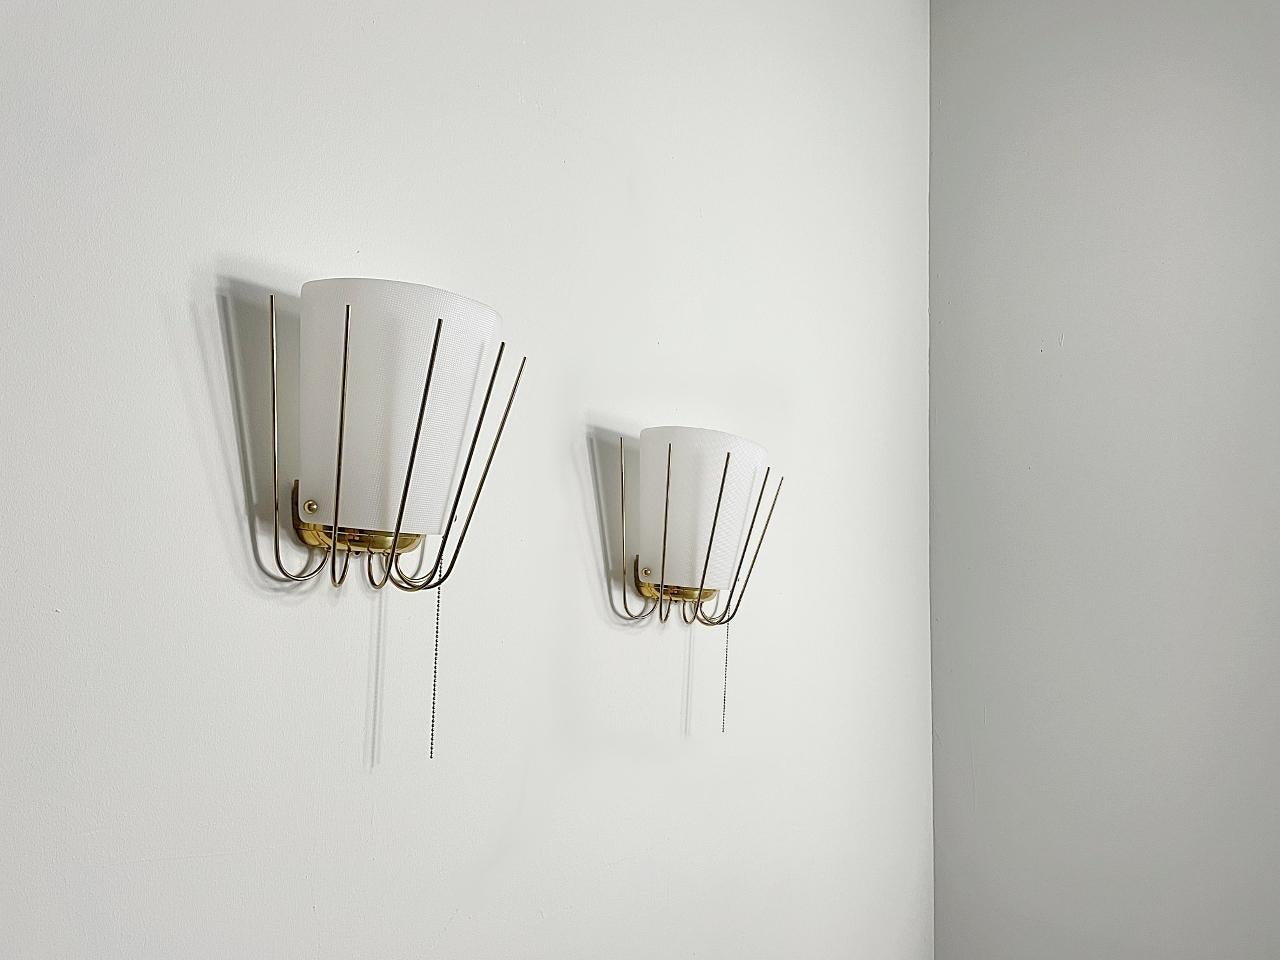 Schöne modernistische Wandleuchten von J. T. Kalmar aus den 1950er Jahren. Die Leuchte ist aus poliertem Messing und die Lampenschirme sind aus Acrylglas gefertigt. Das facettierte Acrylglas sorgt für ein gleichmäßiges, großflächiges